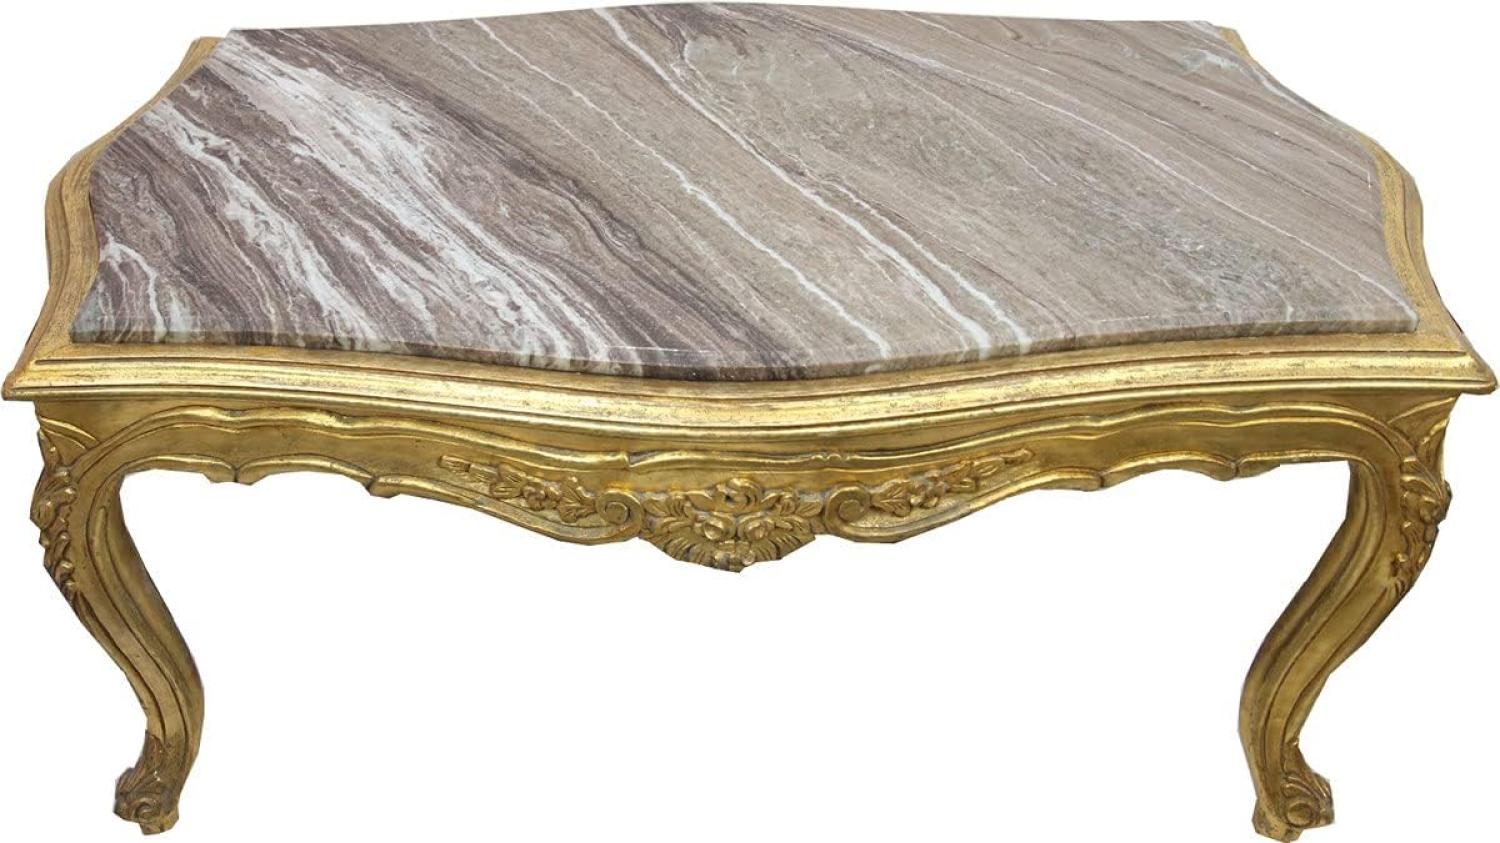 Casa Padrino Barock Couchtisch Gold mit eingesetzter Marmorplatte - Möbel Wohnzimmer Tisch Antik Stil Bild 1